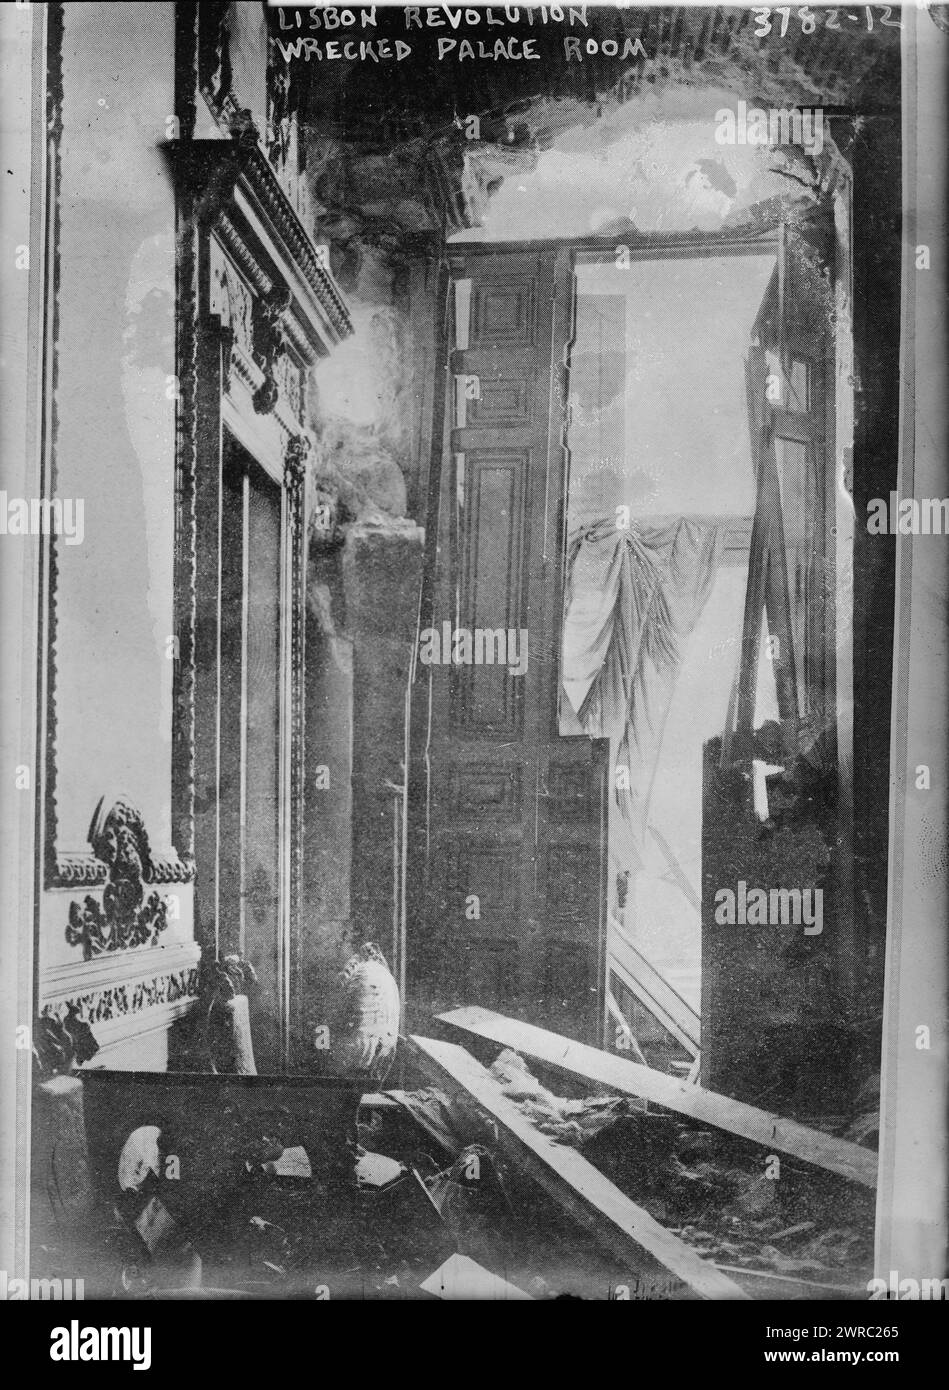 Lisbona, la rivoluzione ha distrutto la stanza del palazzo, la fotografia mostra una stanza danneggiata nel Palácio das Necessidades di Lisbona, Portogallo, che è stata colpita da proiettili il 5 ottobre 1910 durante la rivoluzione repubblicana., 1910, Glass negative, 1 negative: Glass Foto Stock